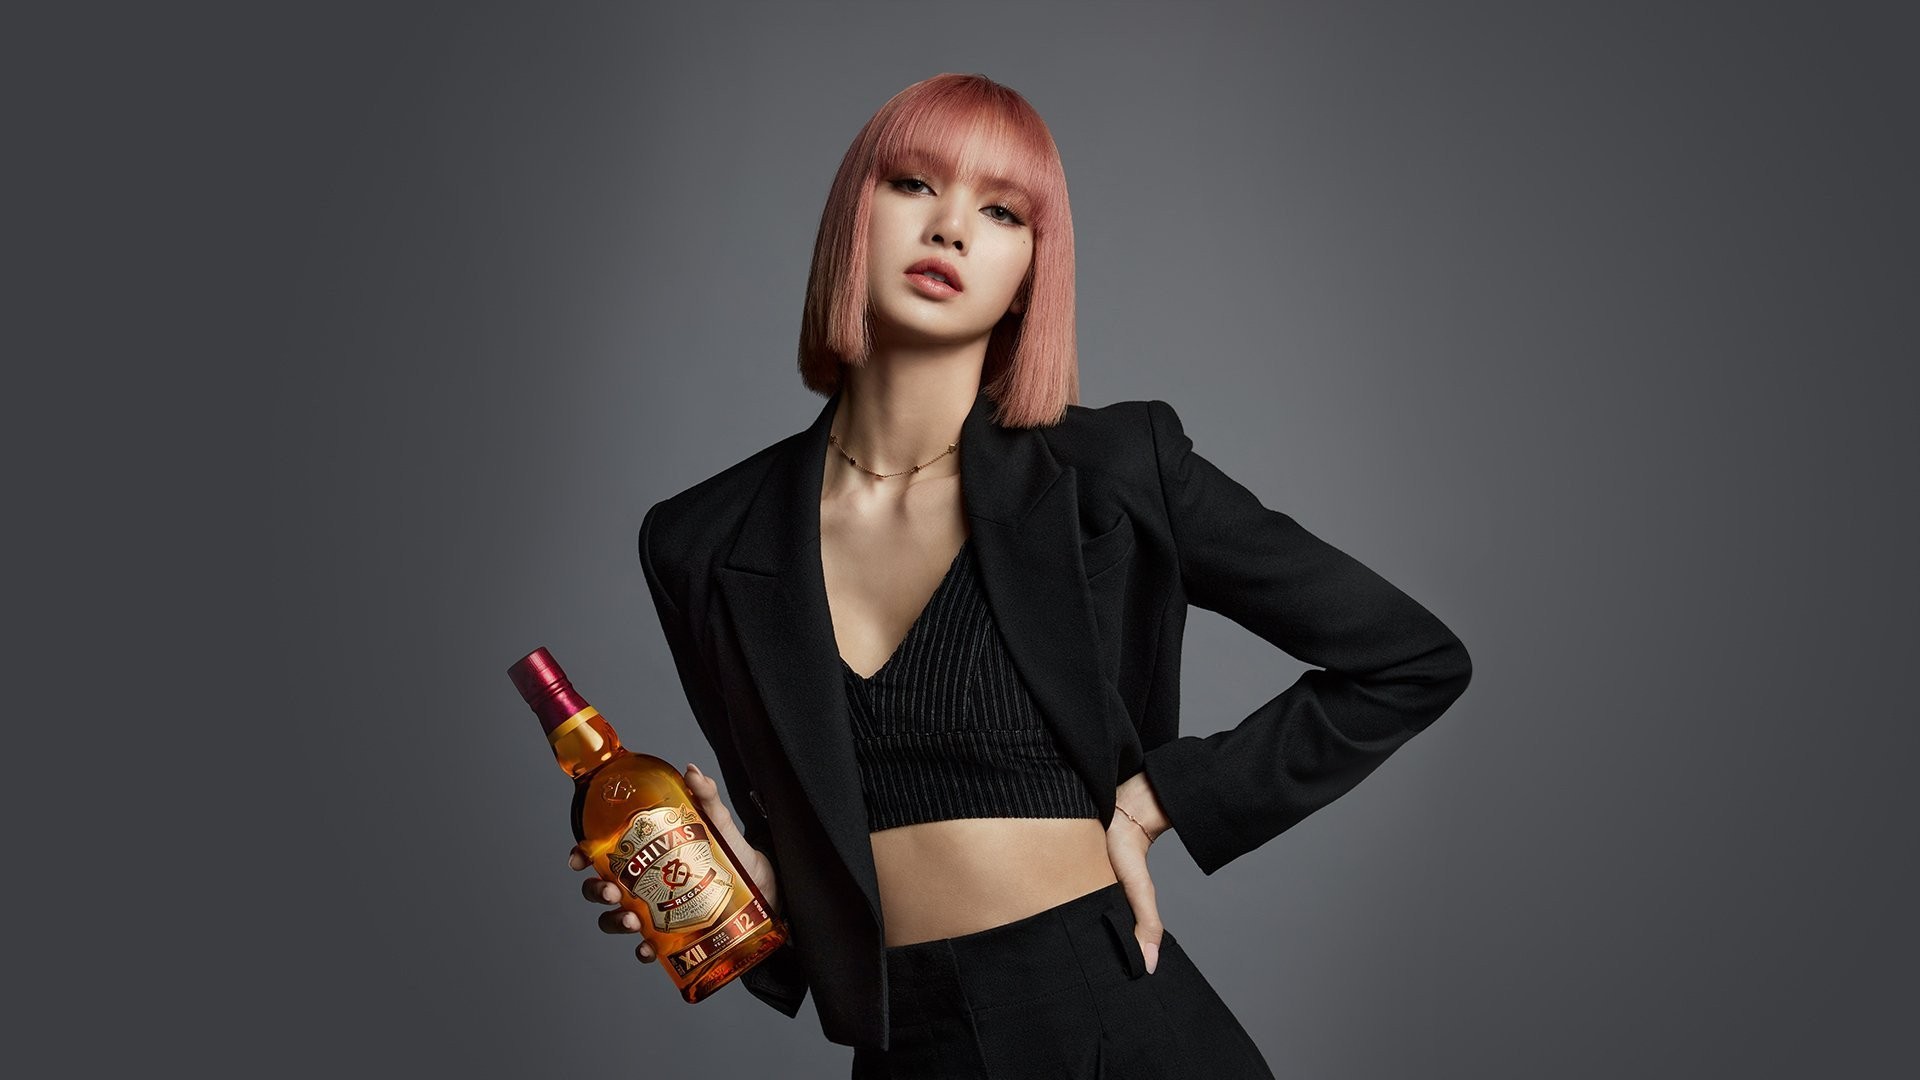 Whisky Chivas 18 không chỉ là một chai rượu mà còn là một tác phẩm nghệ thuật do Lisa đồng thiết kế